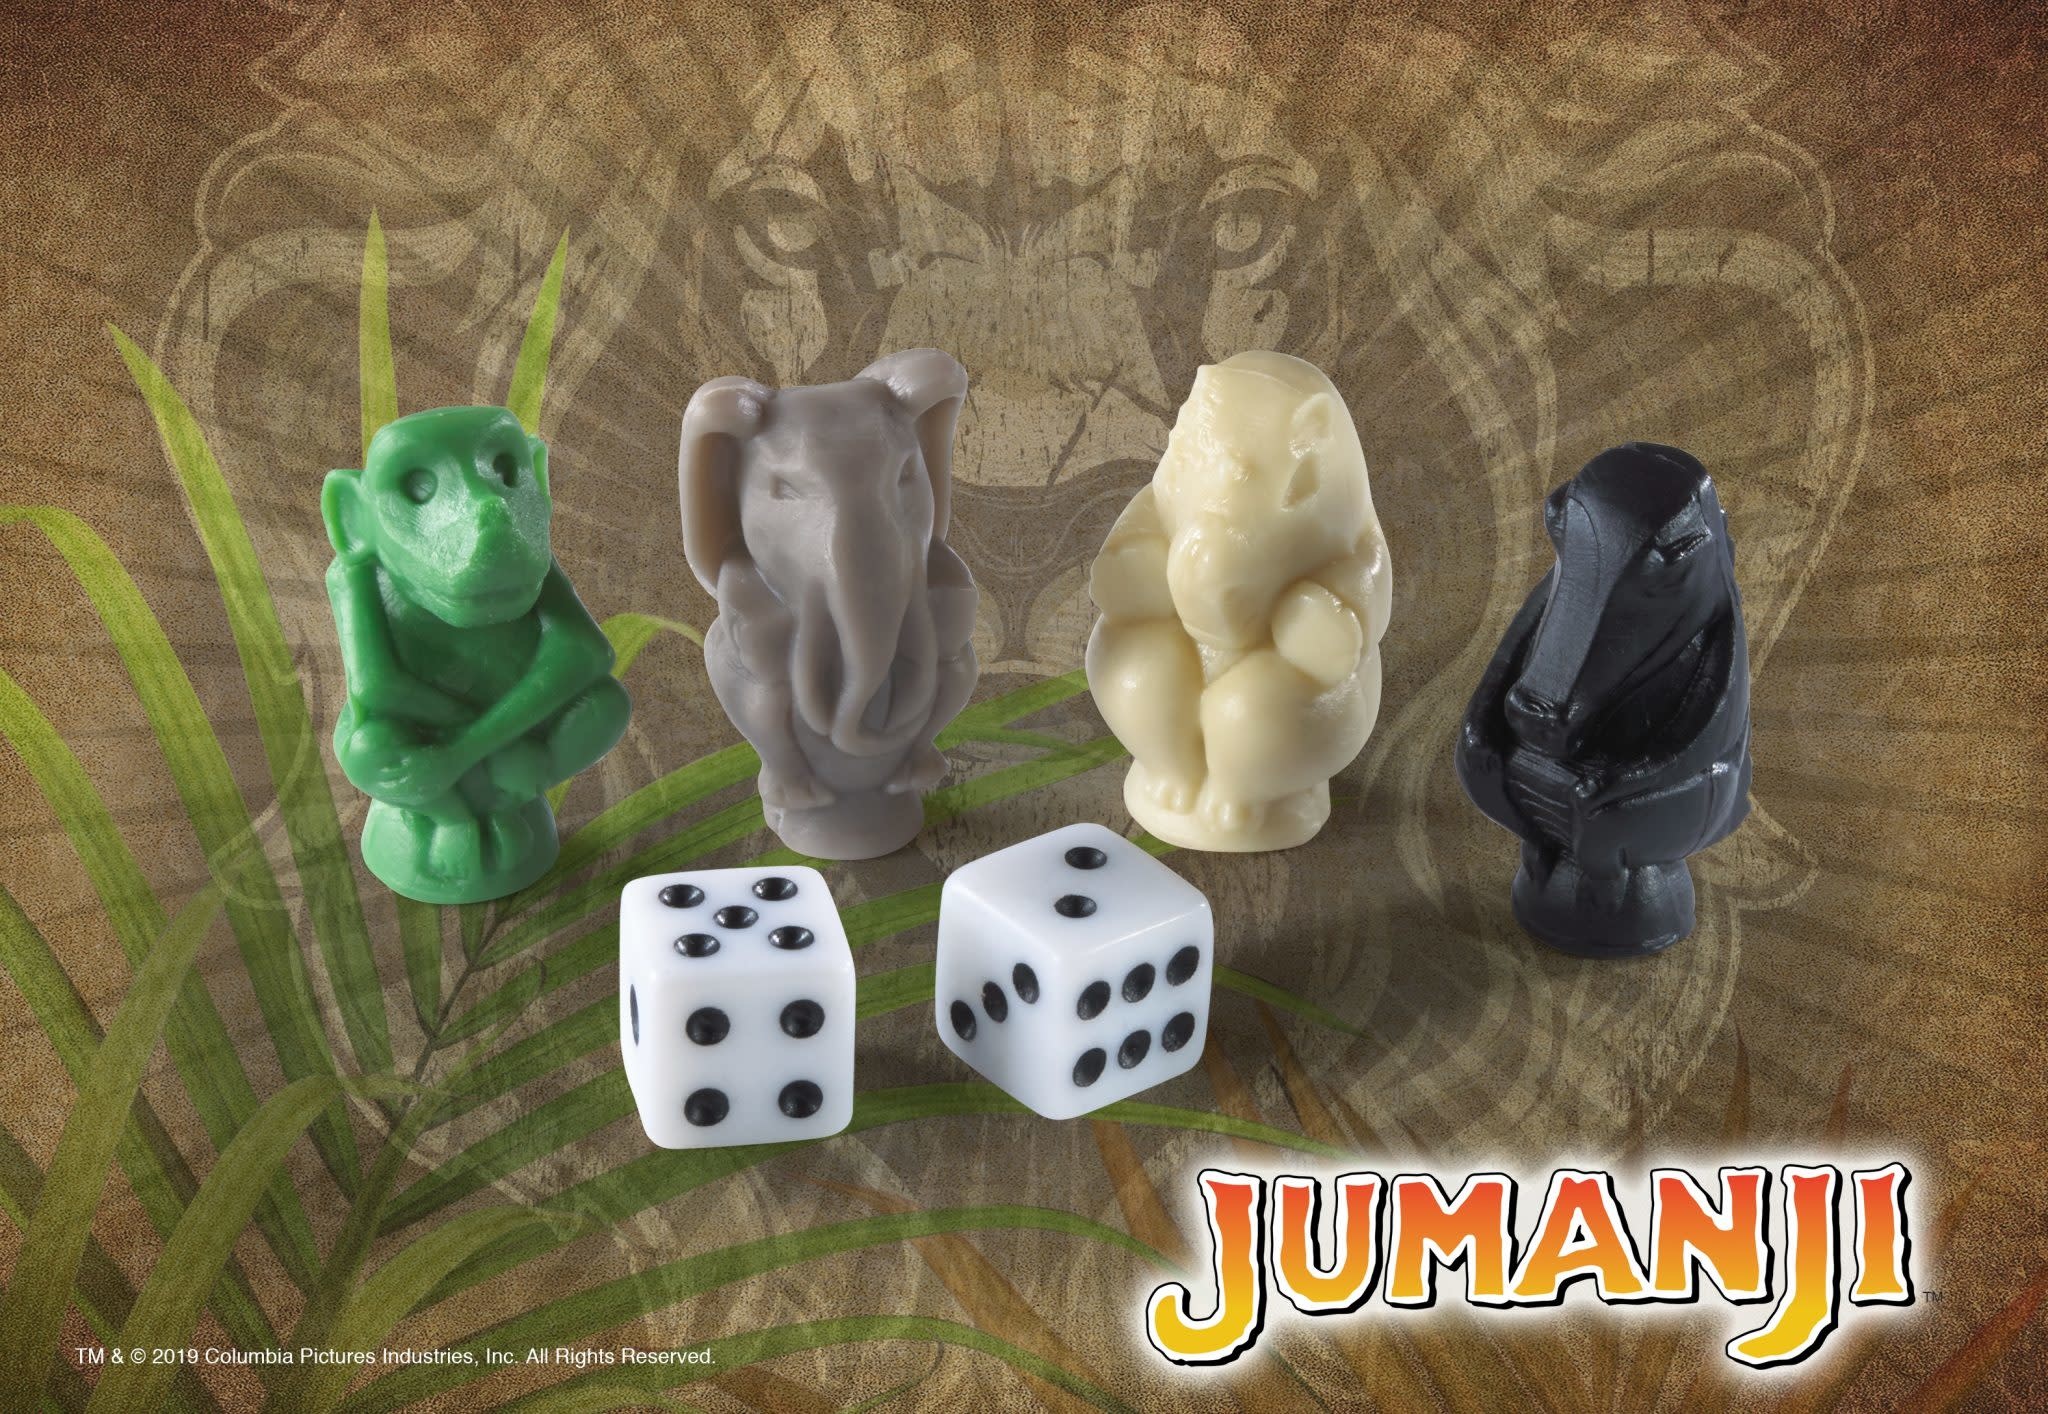 Jumanji, une réplique parfaite du jeu